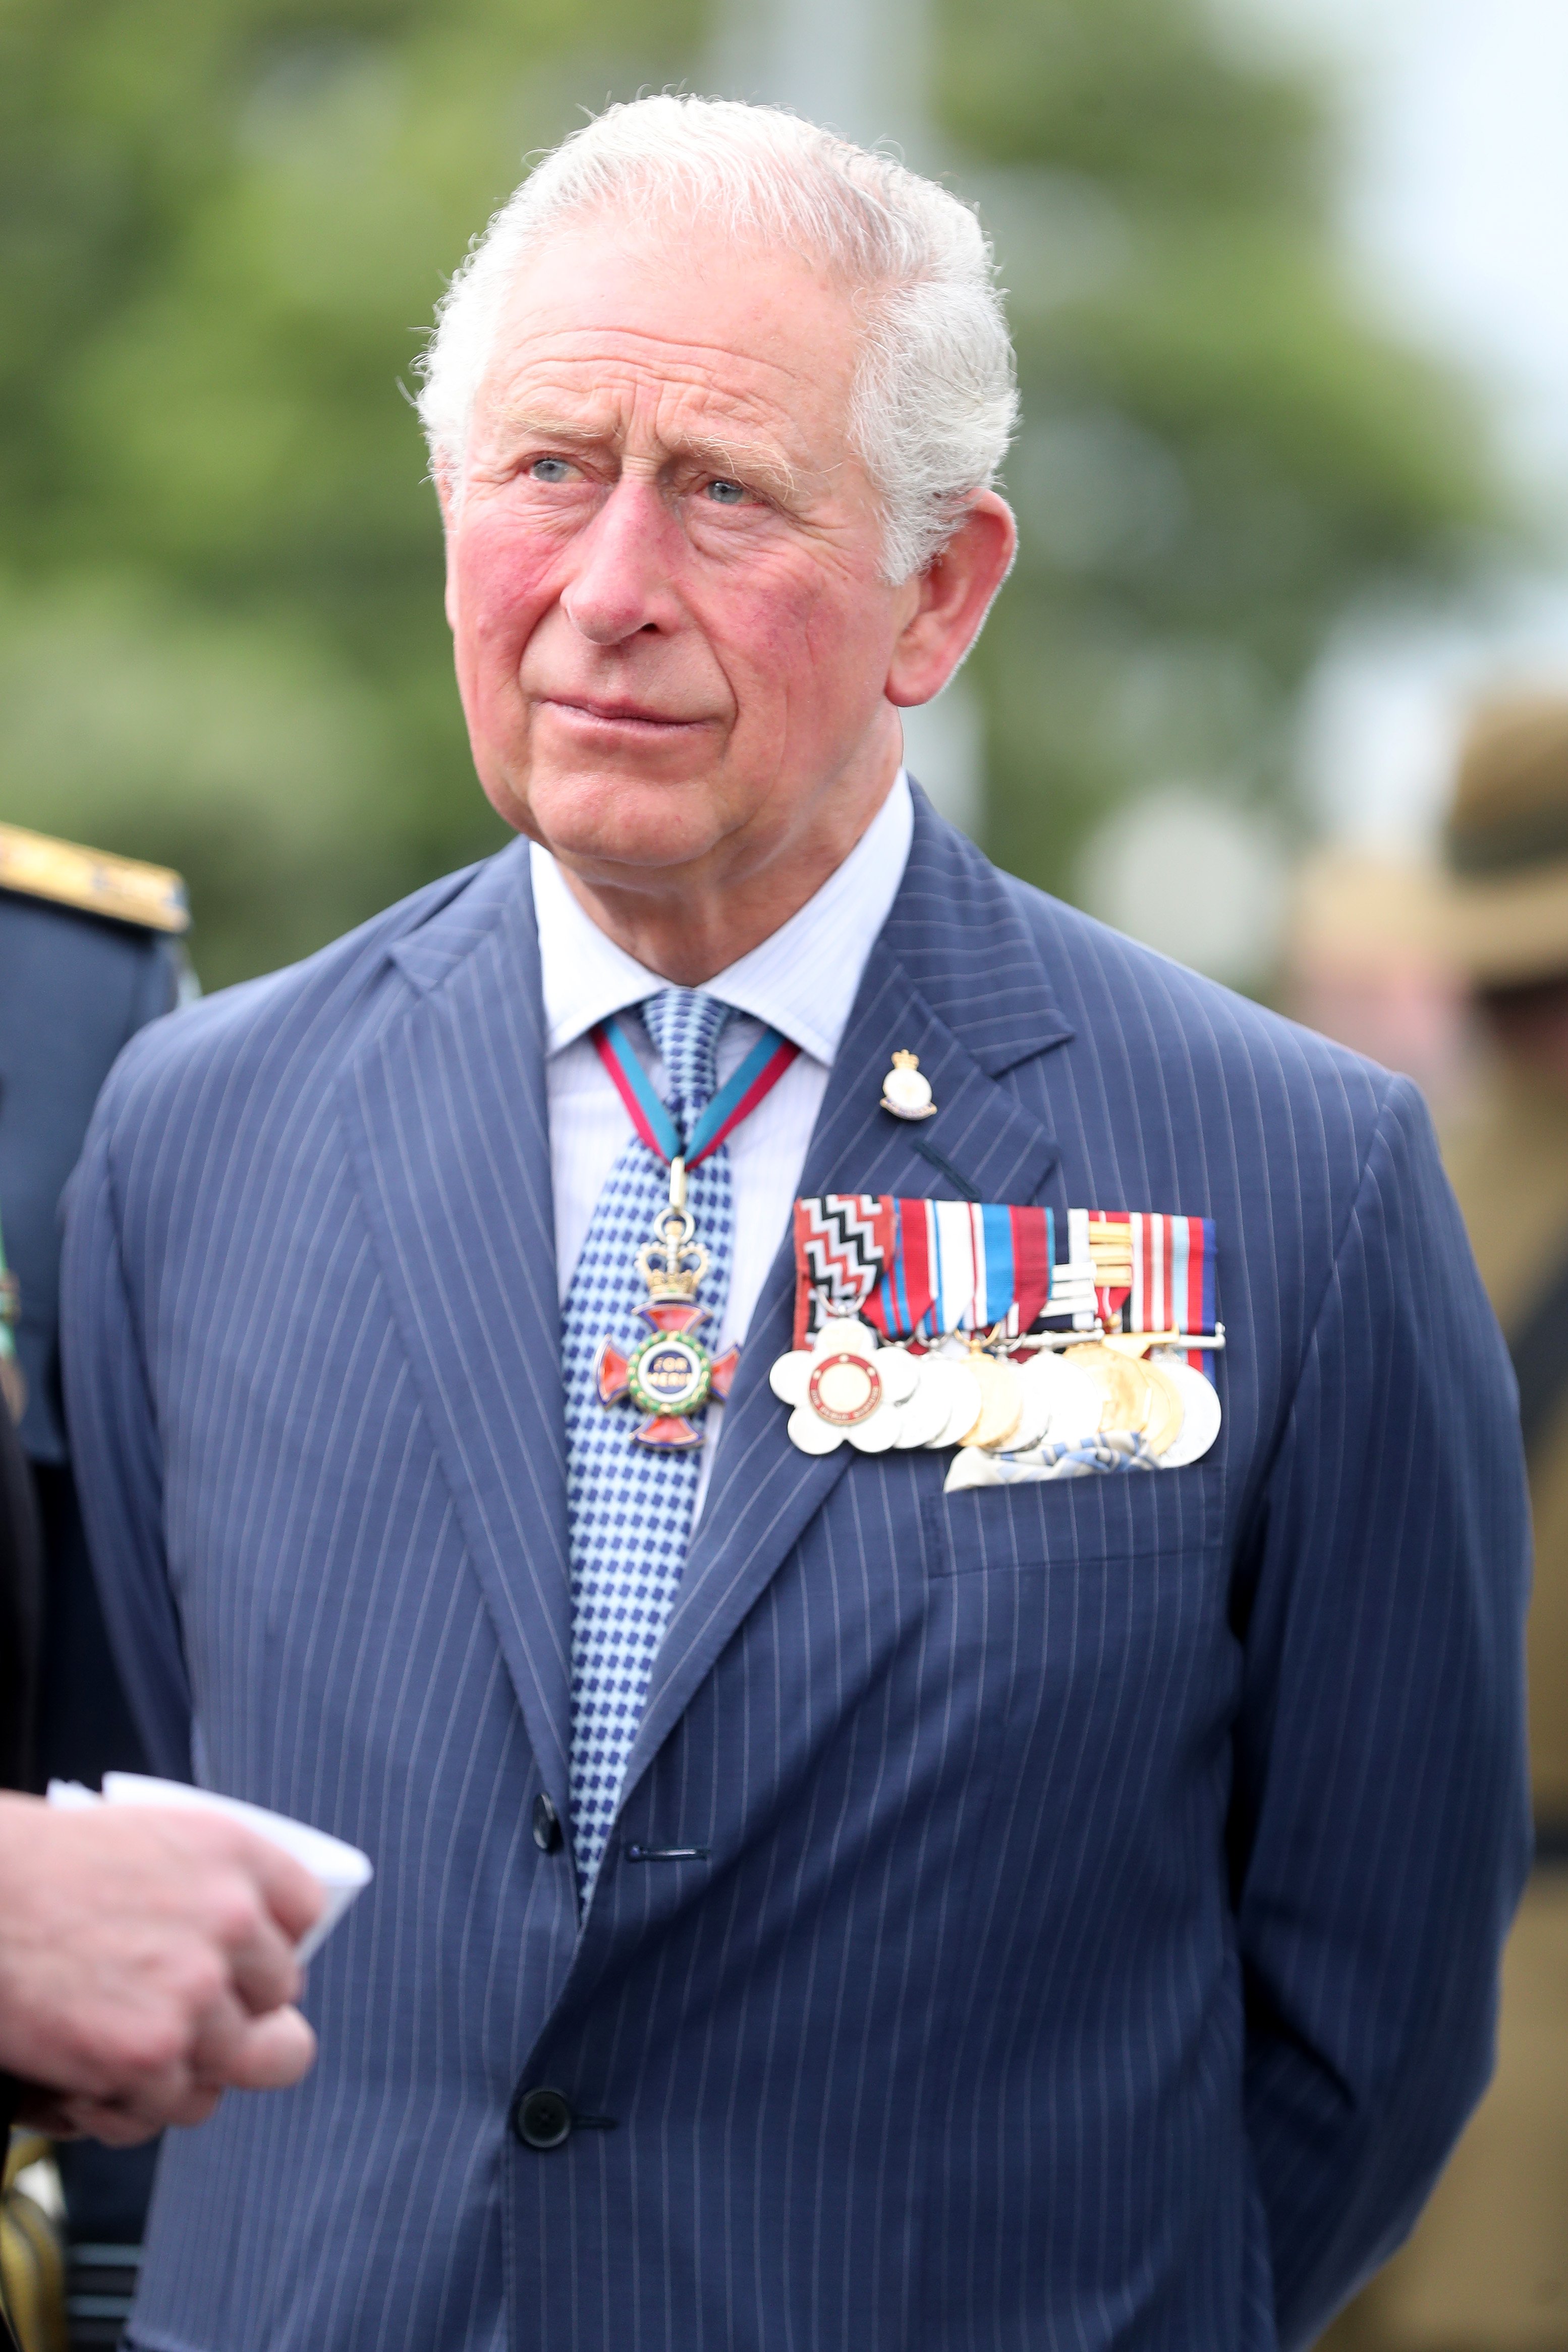 El príncipe Charles, ahora rey, en una ceremonia de colocación de coronas en Mt Roskill War Memorial, el 18 de noviembre de 2019 en Auckland, Nueva Zelanda. | Foto: Getty Images